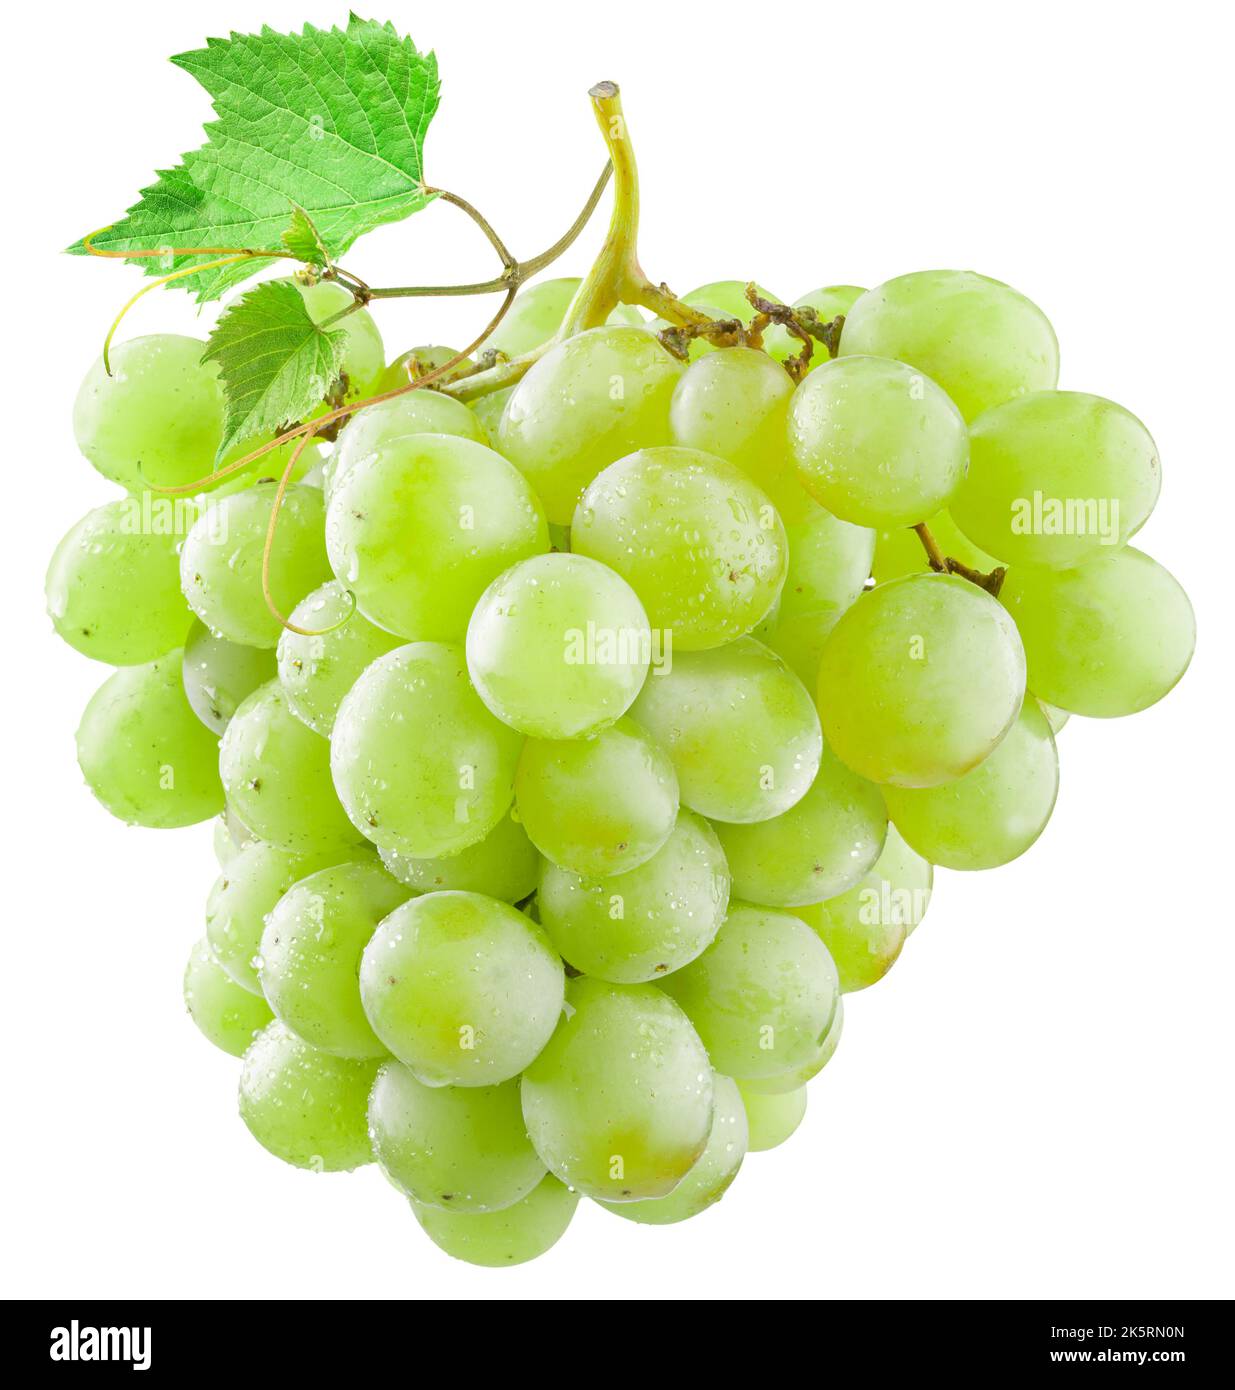 Trauben aus grünen (gelben) Trauben mit einem Traubenblatt, isoliert auf weißem Hintergrund. Es gibt einen Beschneidungspfad. Stockfoto